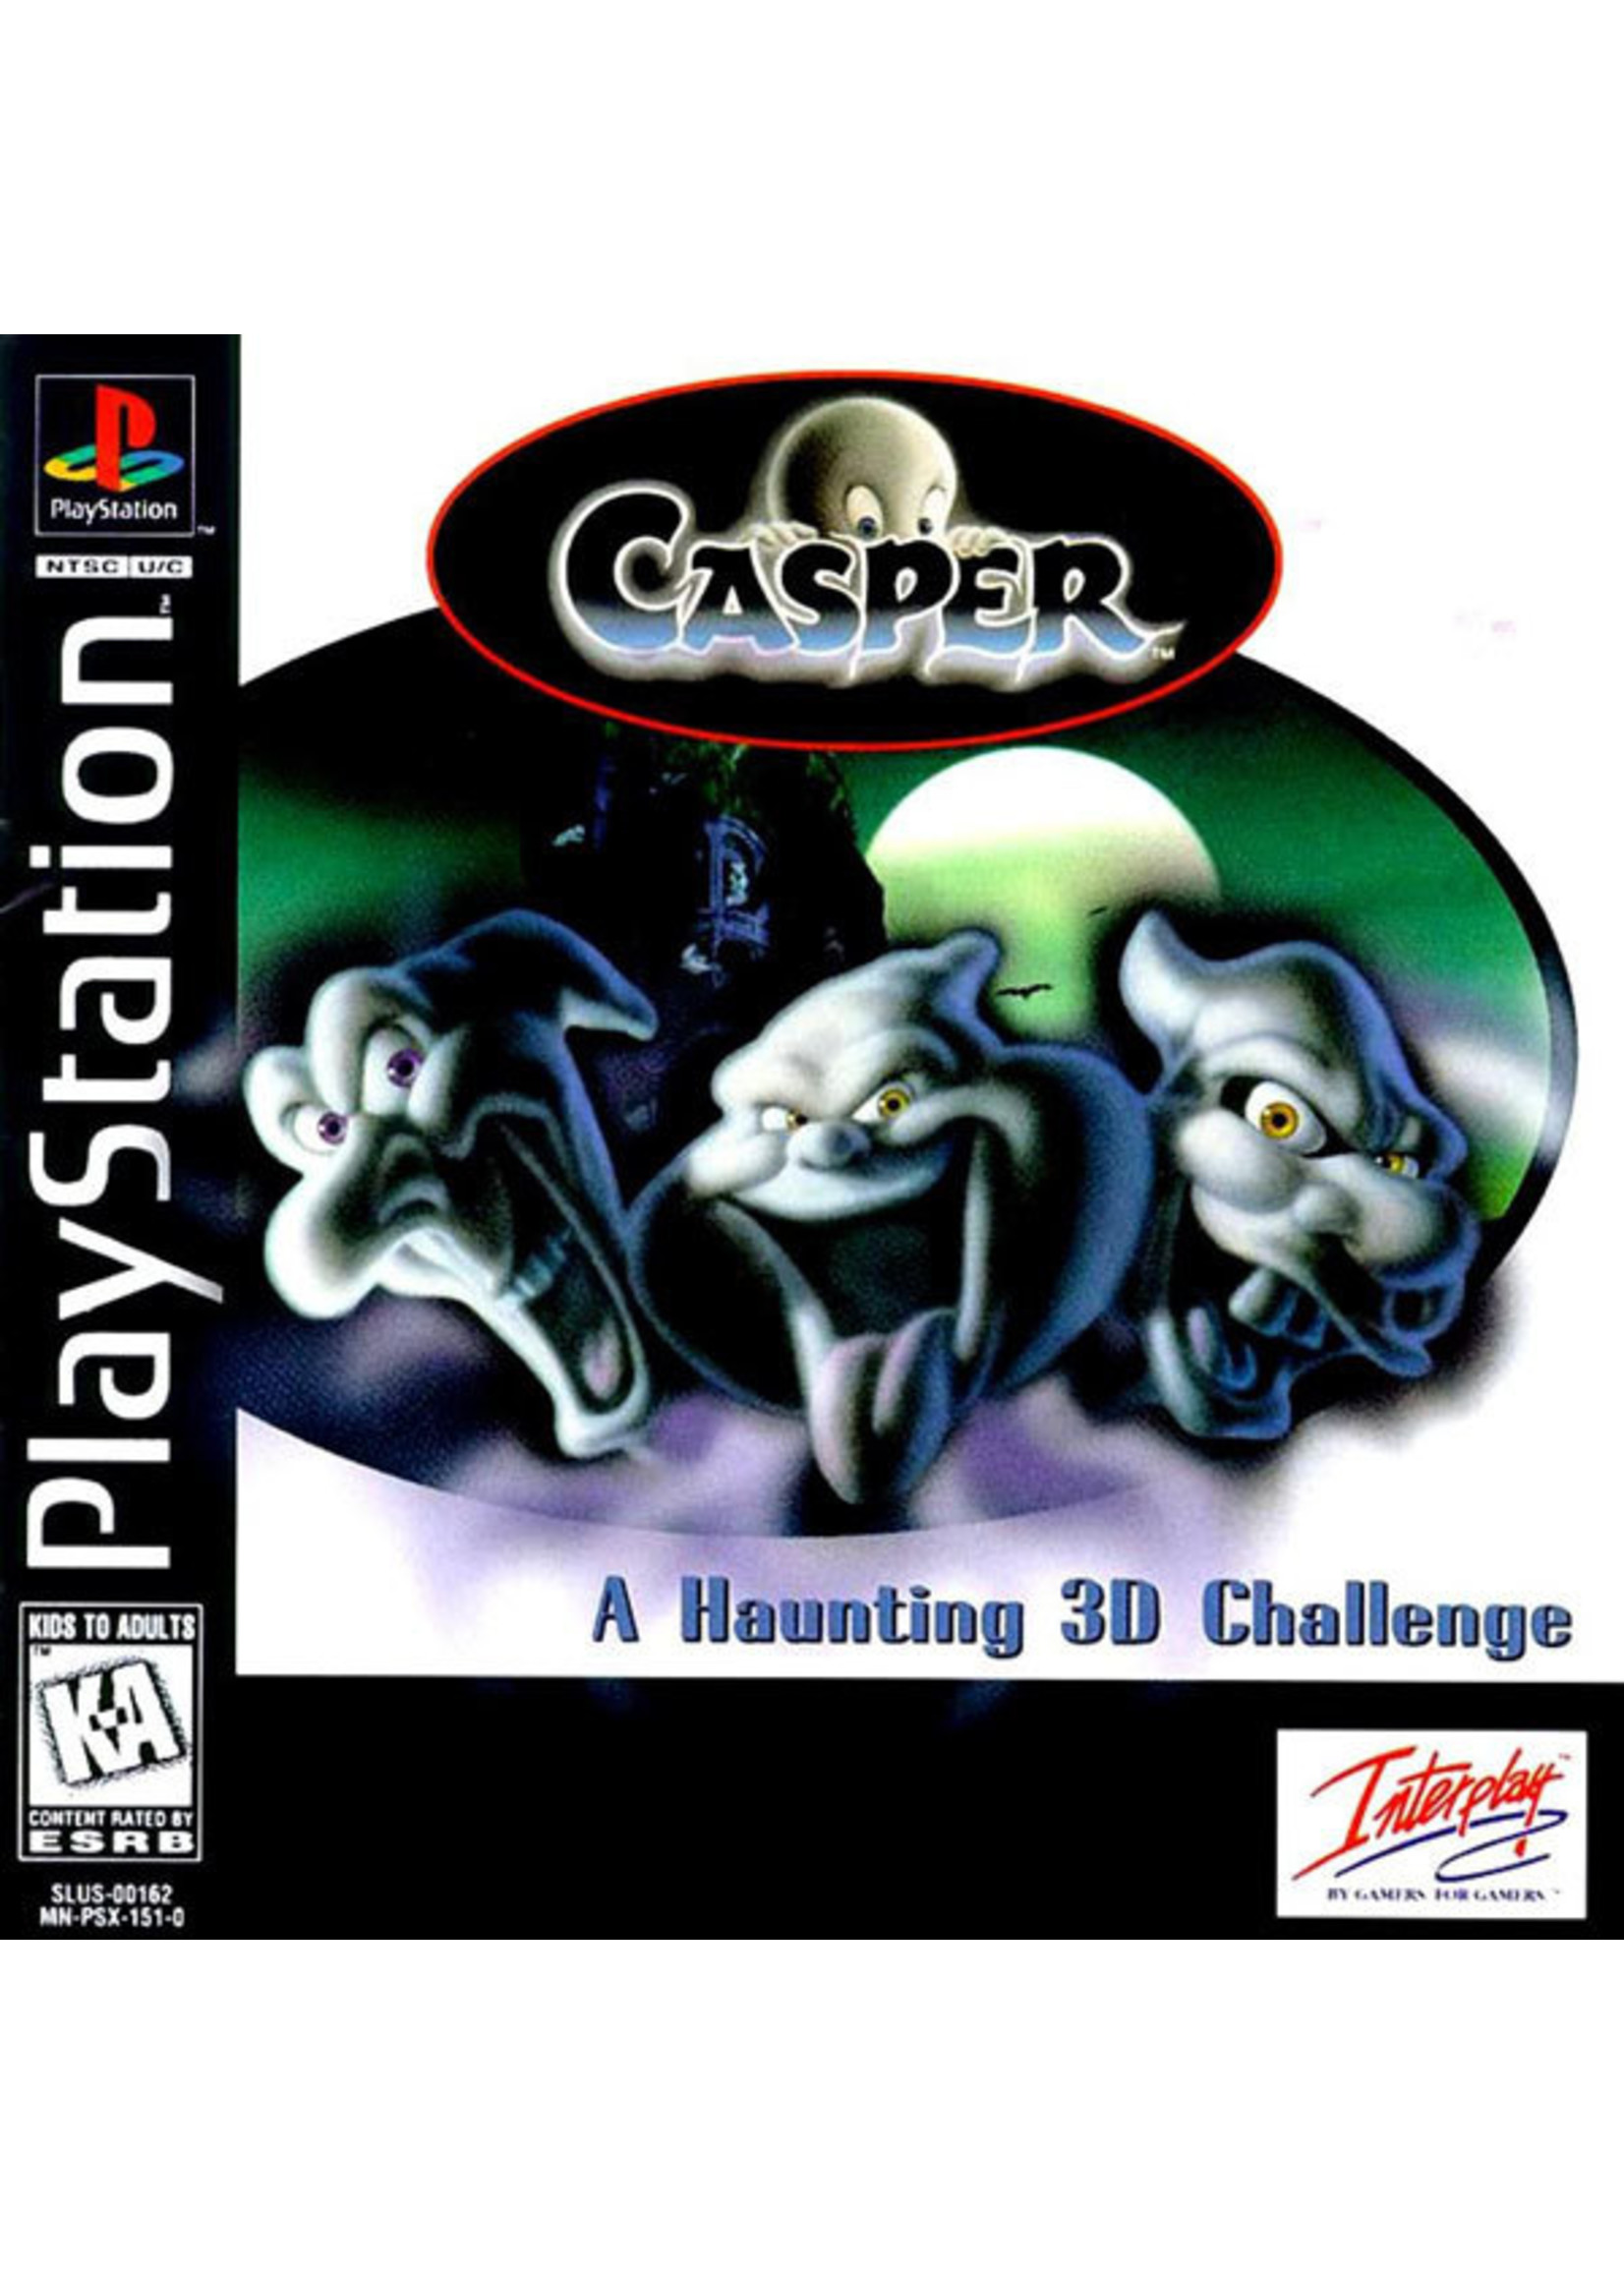 Sony Playstation 1 (PS1) Casper